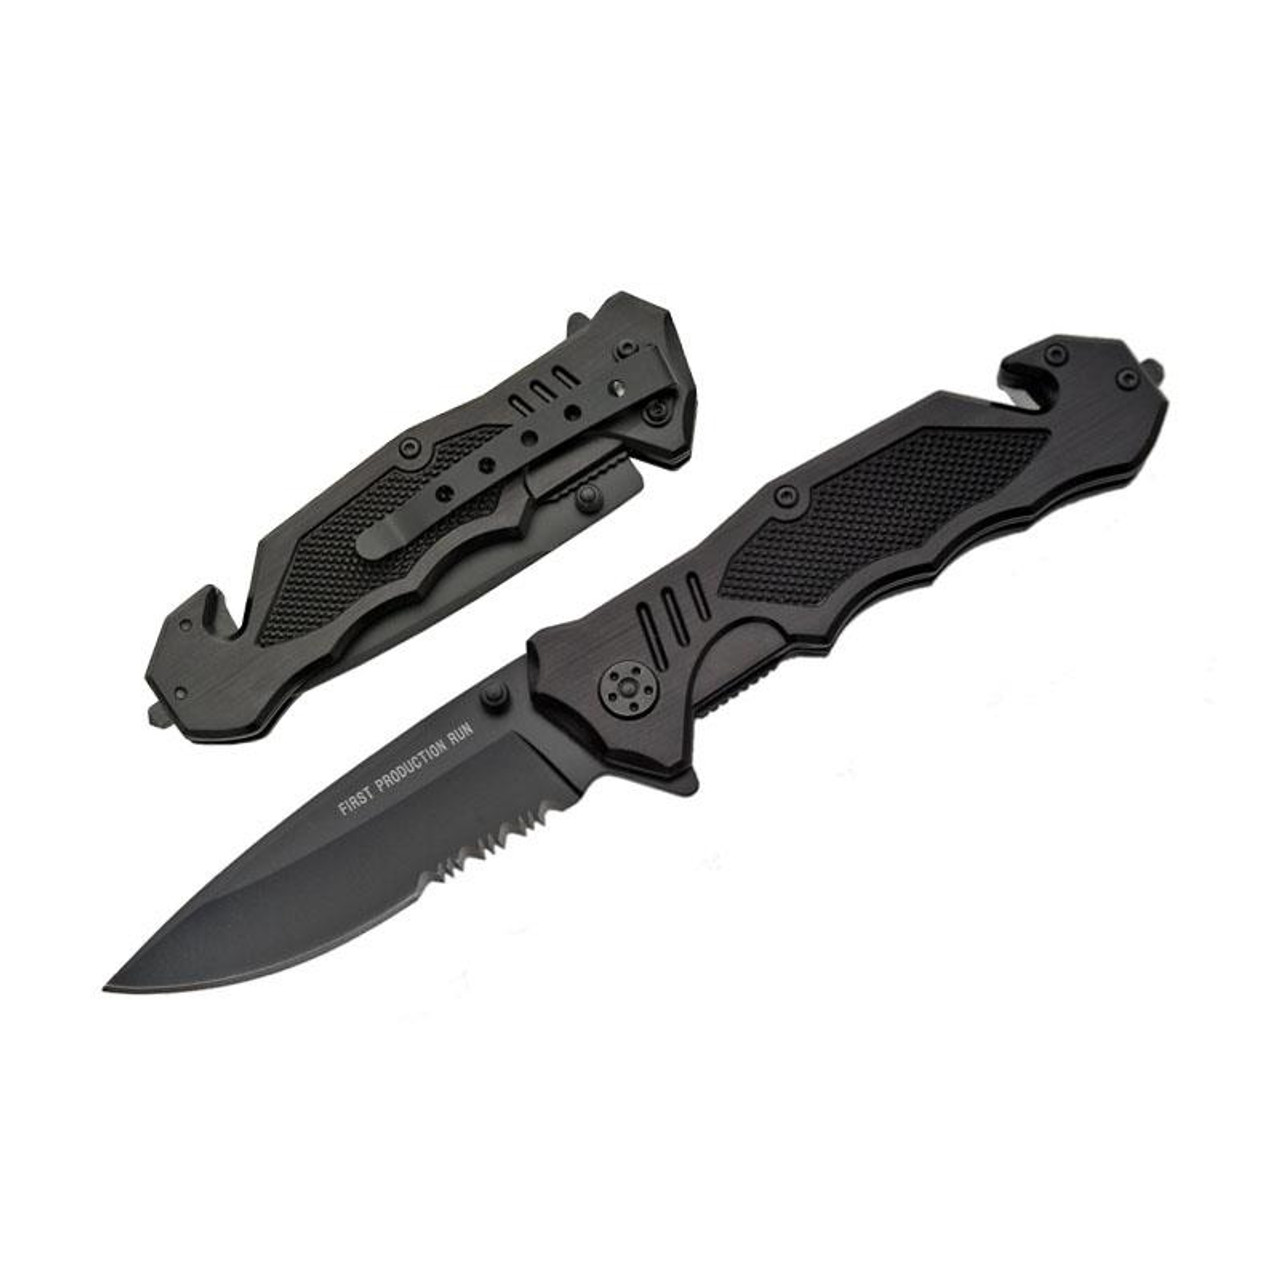 Rite Edge Large Stockman Black Folding Knife - J&L Self Defense Products